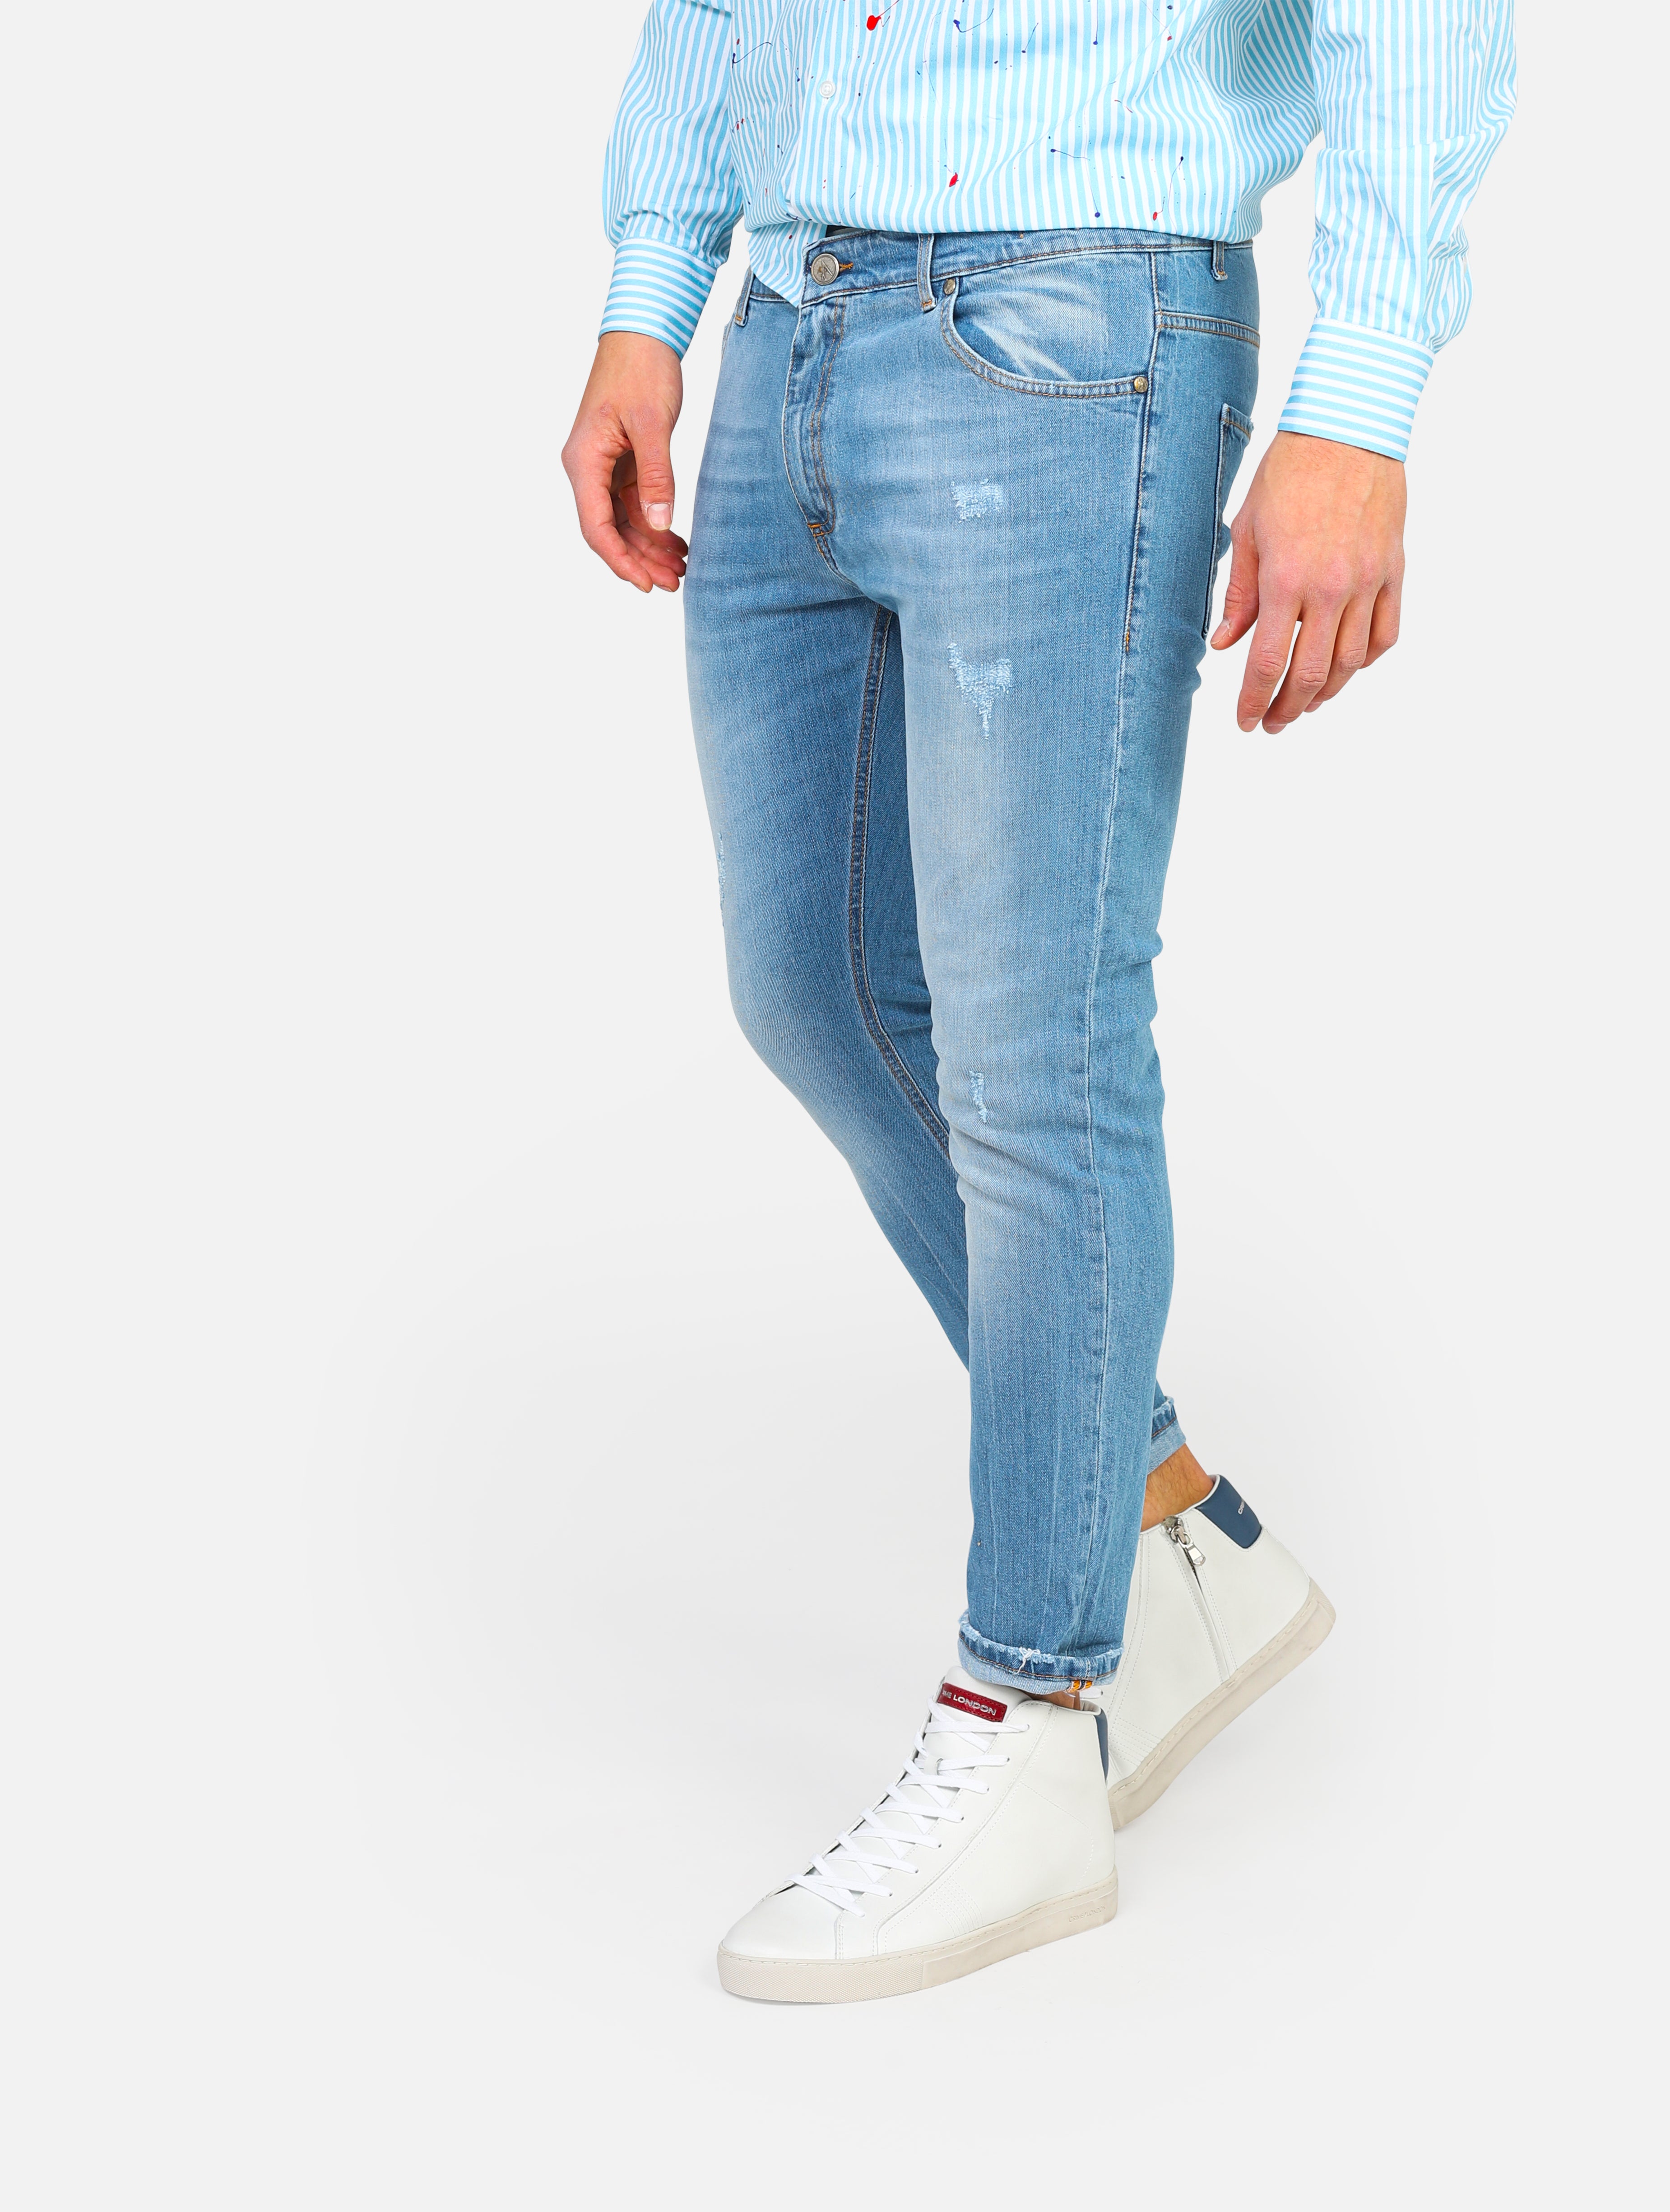 Jeans 5 tasche con tasca patch posteriore in fantasia, piccole lacerazioni -  denim man  - 2